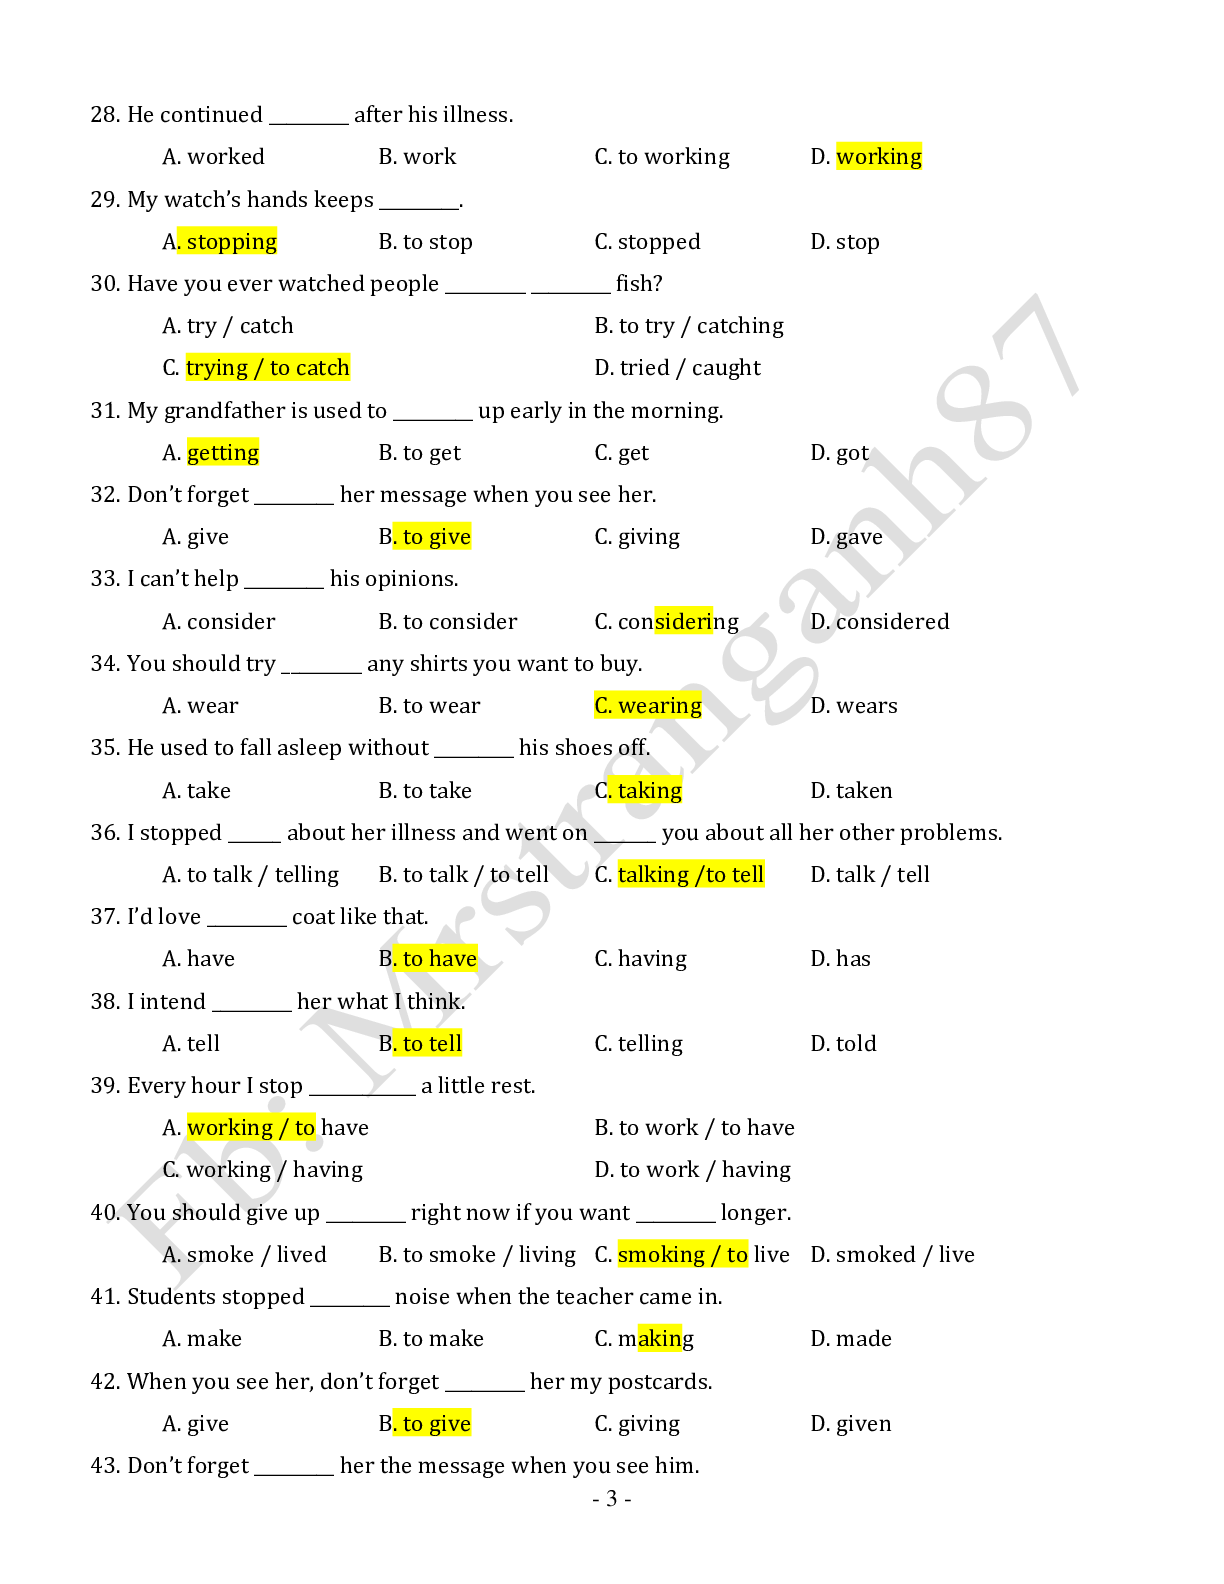 Chuyên đề: Danh động từ và động từ nguyên mẫu môn Tiếng Anh ôn thi THPTQG (trang 3)